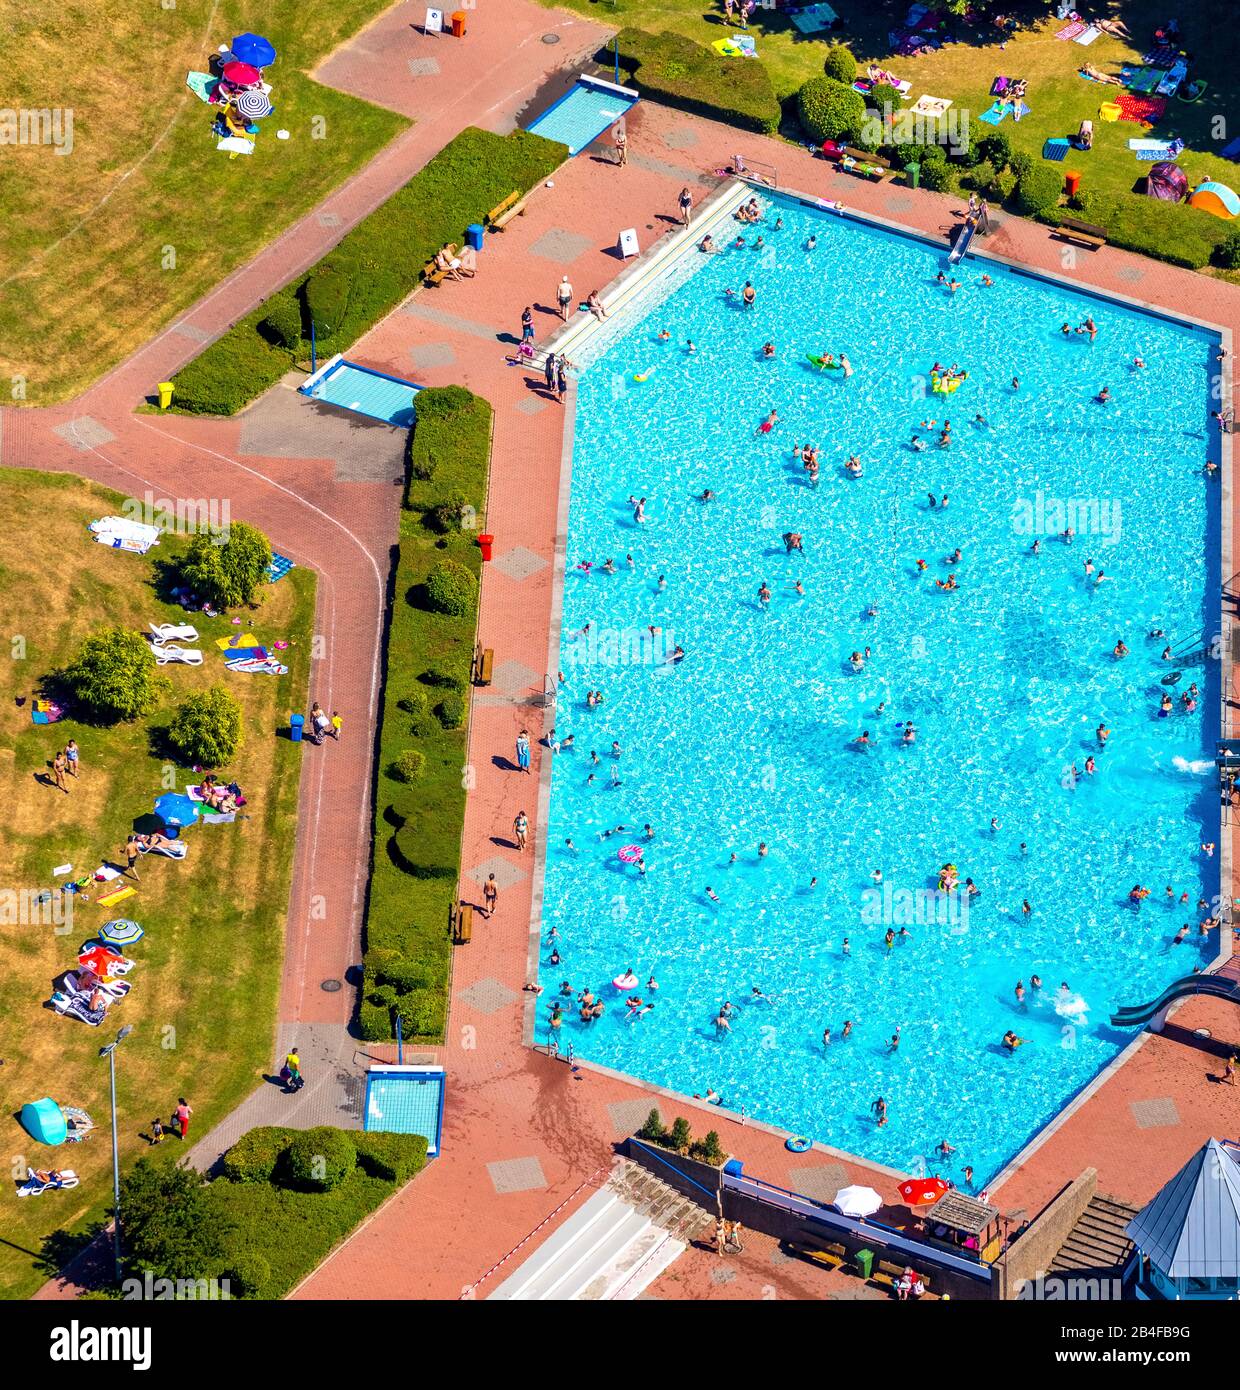 Vue aérienne de la piscine extérieure et de la piscine publique HeljensBad avec piscine nageuse, piscine pour longueurs et bains de soleil à Heiligenhaus dans la région de la Ruhr dans l'état fédéral de Rhénanie-du-Nord-Westphalie en Allemagne. Banque D'Images